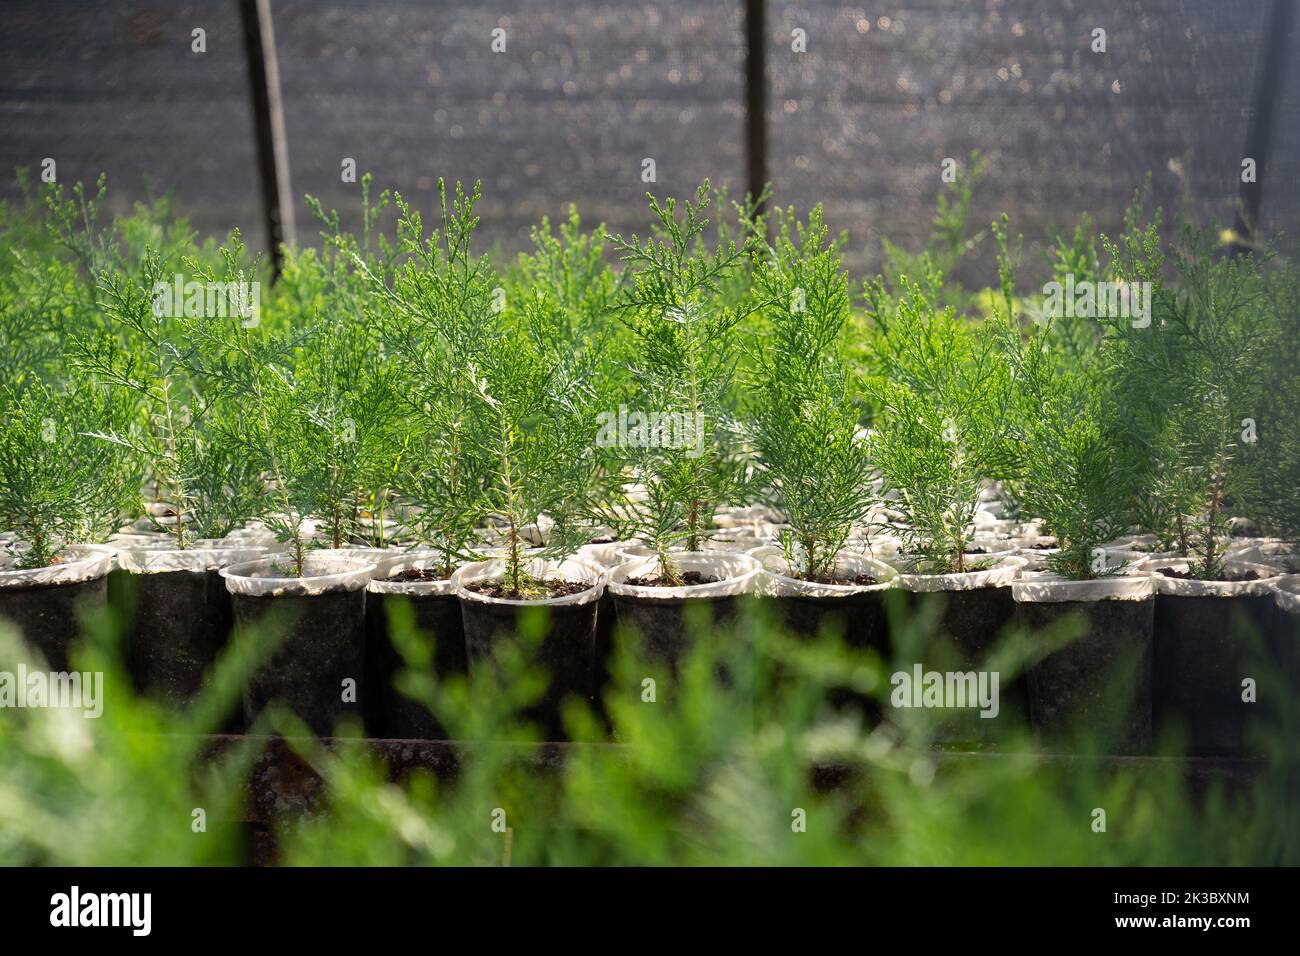 Las plántulas de thuja verdes crecen en un invernadero y macetas especiales, cultivadas para la venta o decoración de la casa Foto de stock